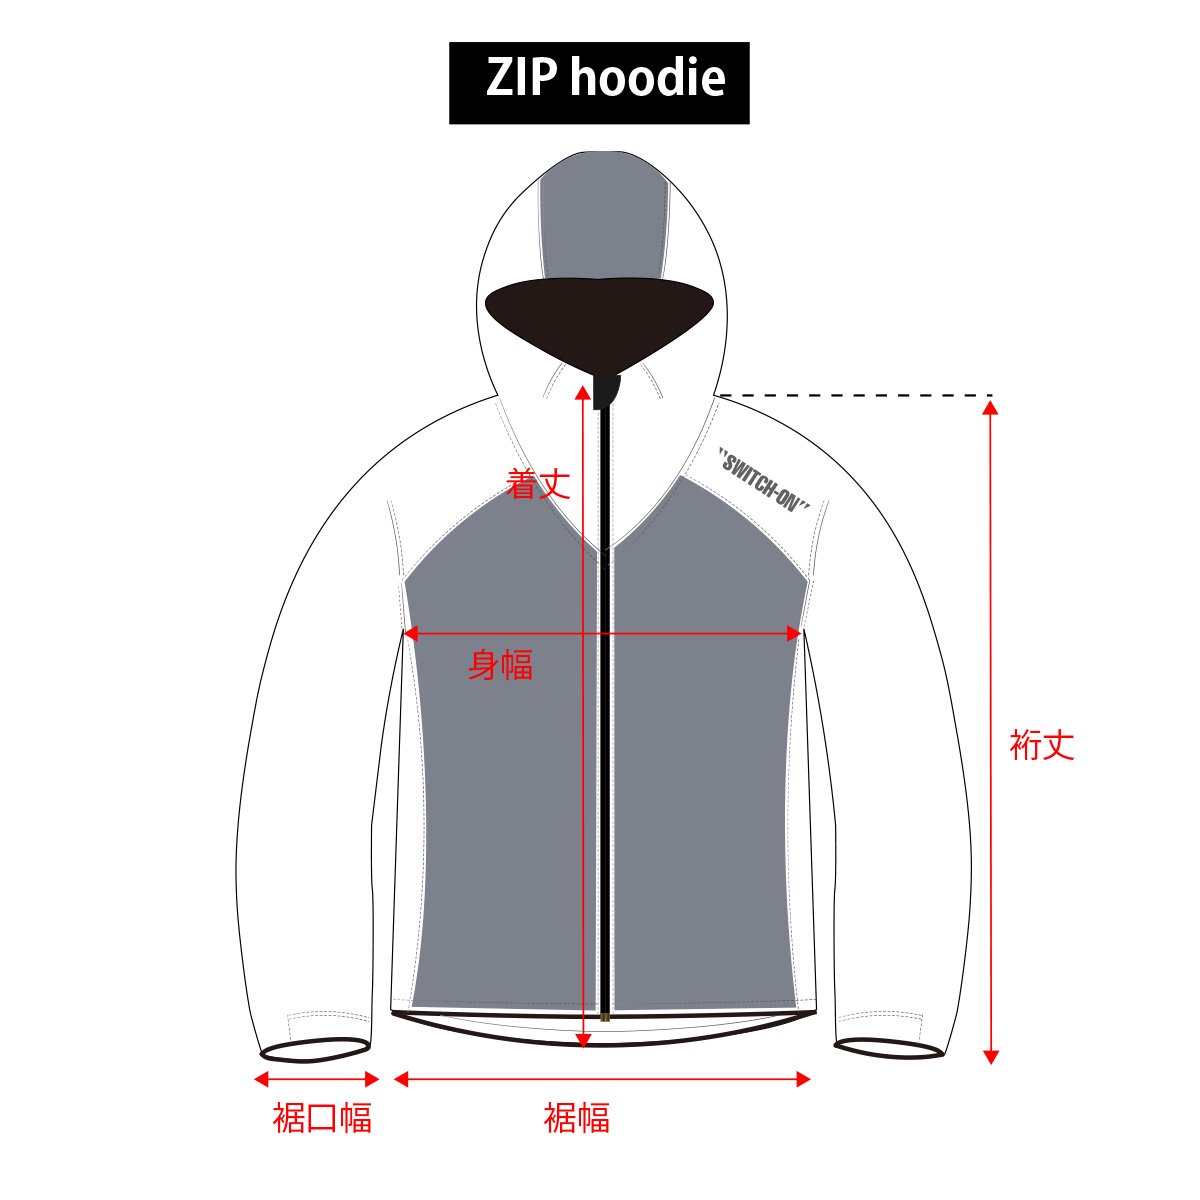 EZ zip hoodie